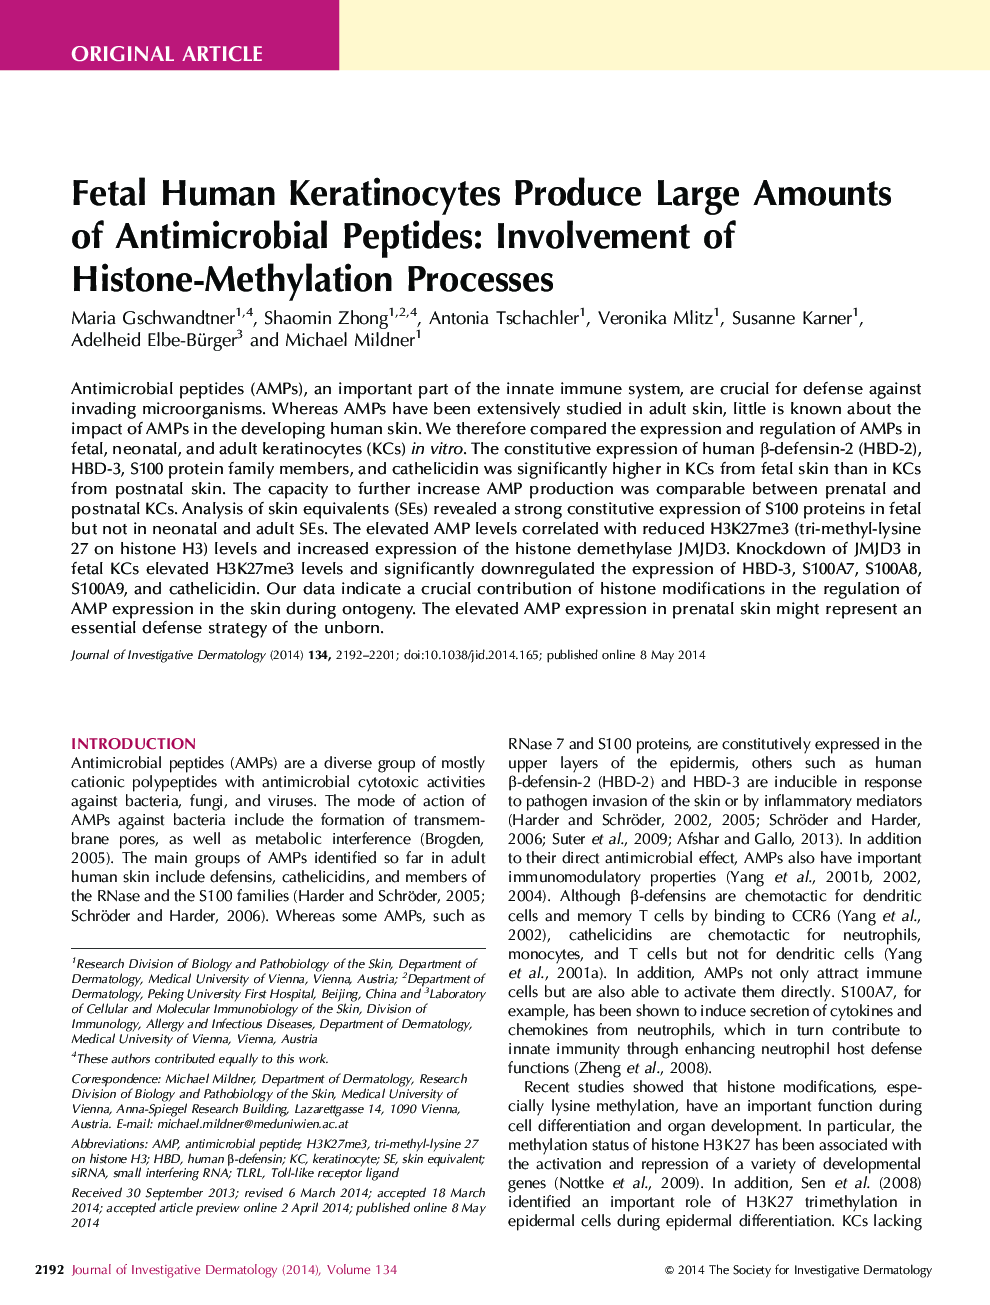 کراتینوسیت های انسانی جنین تولید مقدار زیادی از پپتید های ضد میکروبی: درگیر شدن از پروتئین های هیستون-متیل شدن 